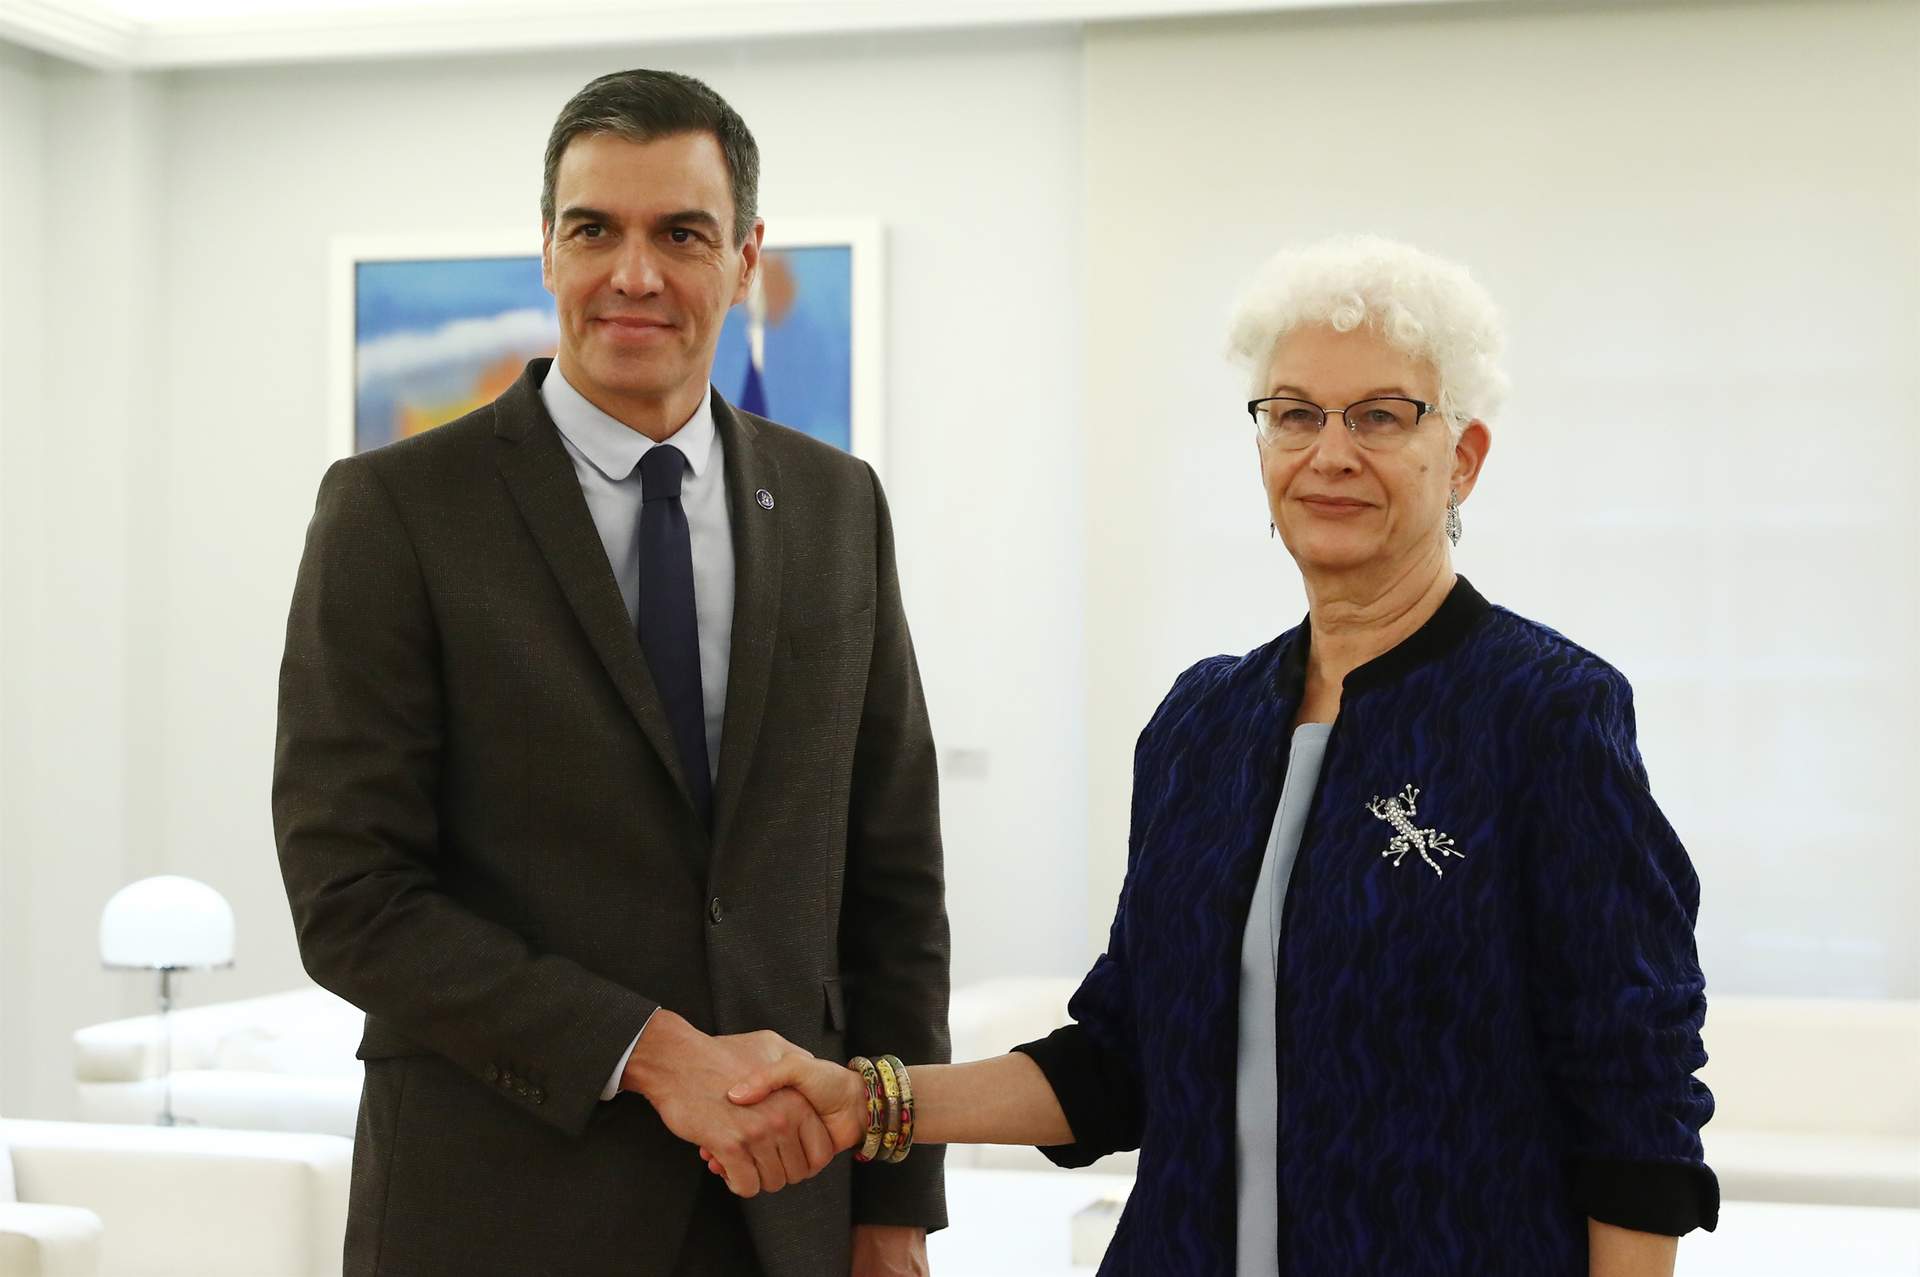 Cargar máis
Sánchez se reúne con la embajadora de Israel en España y Andorra, Rodica Radian-Gordon, en el Complejo de la Moncloa.